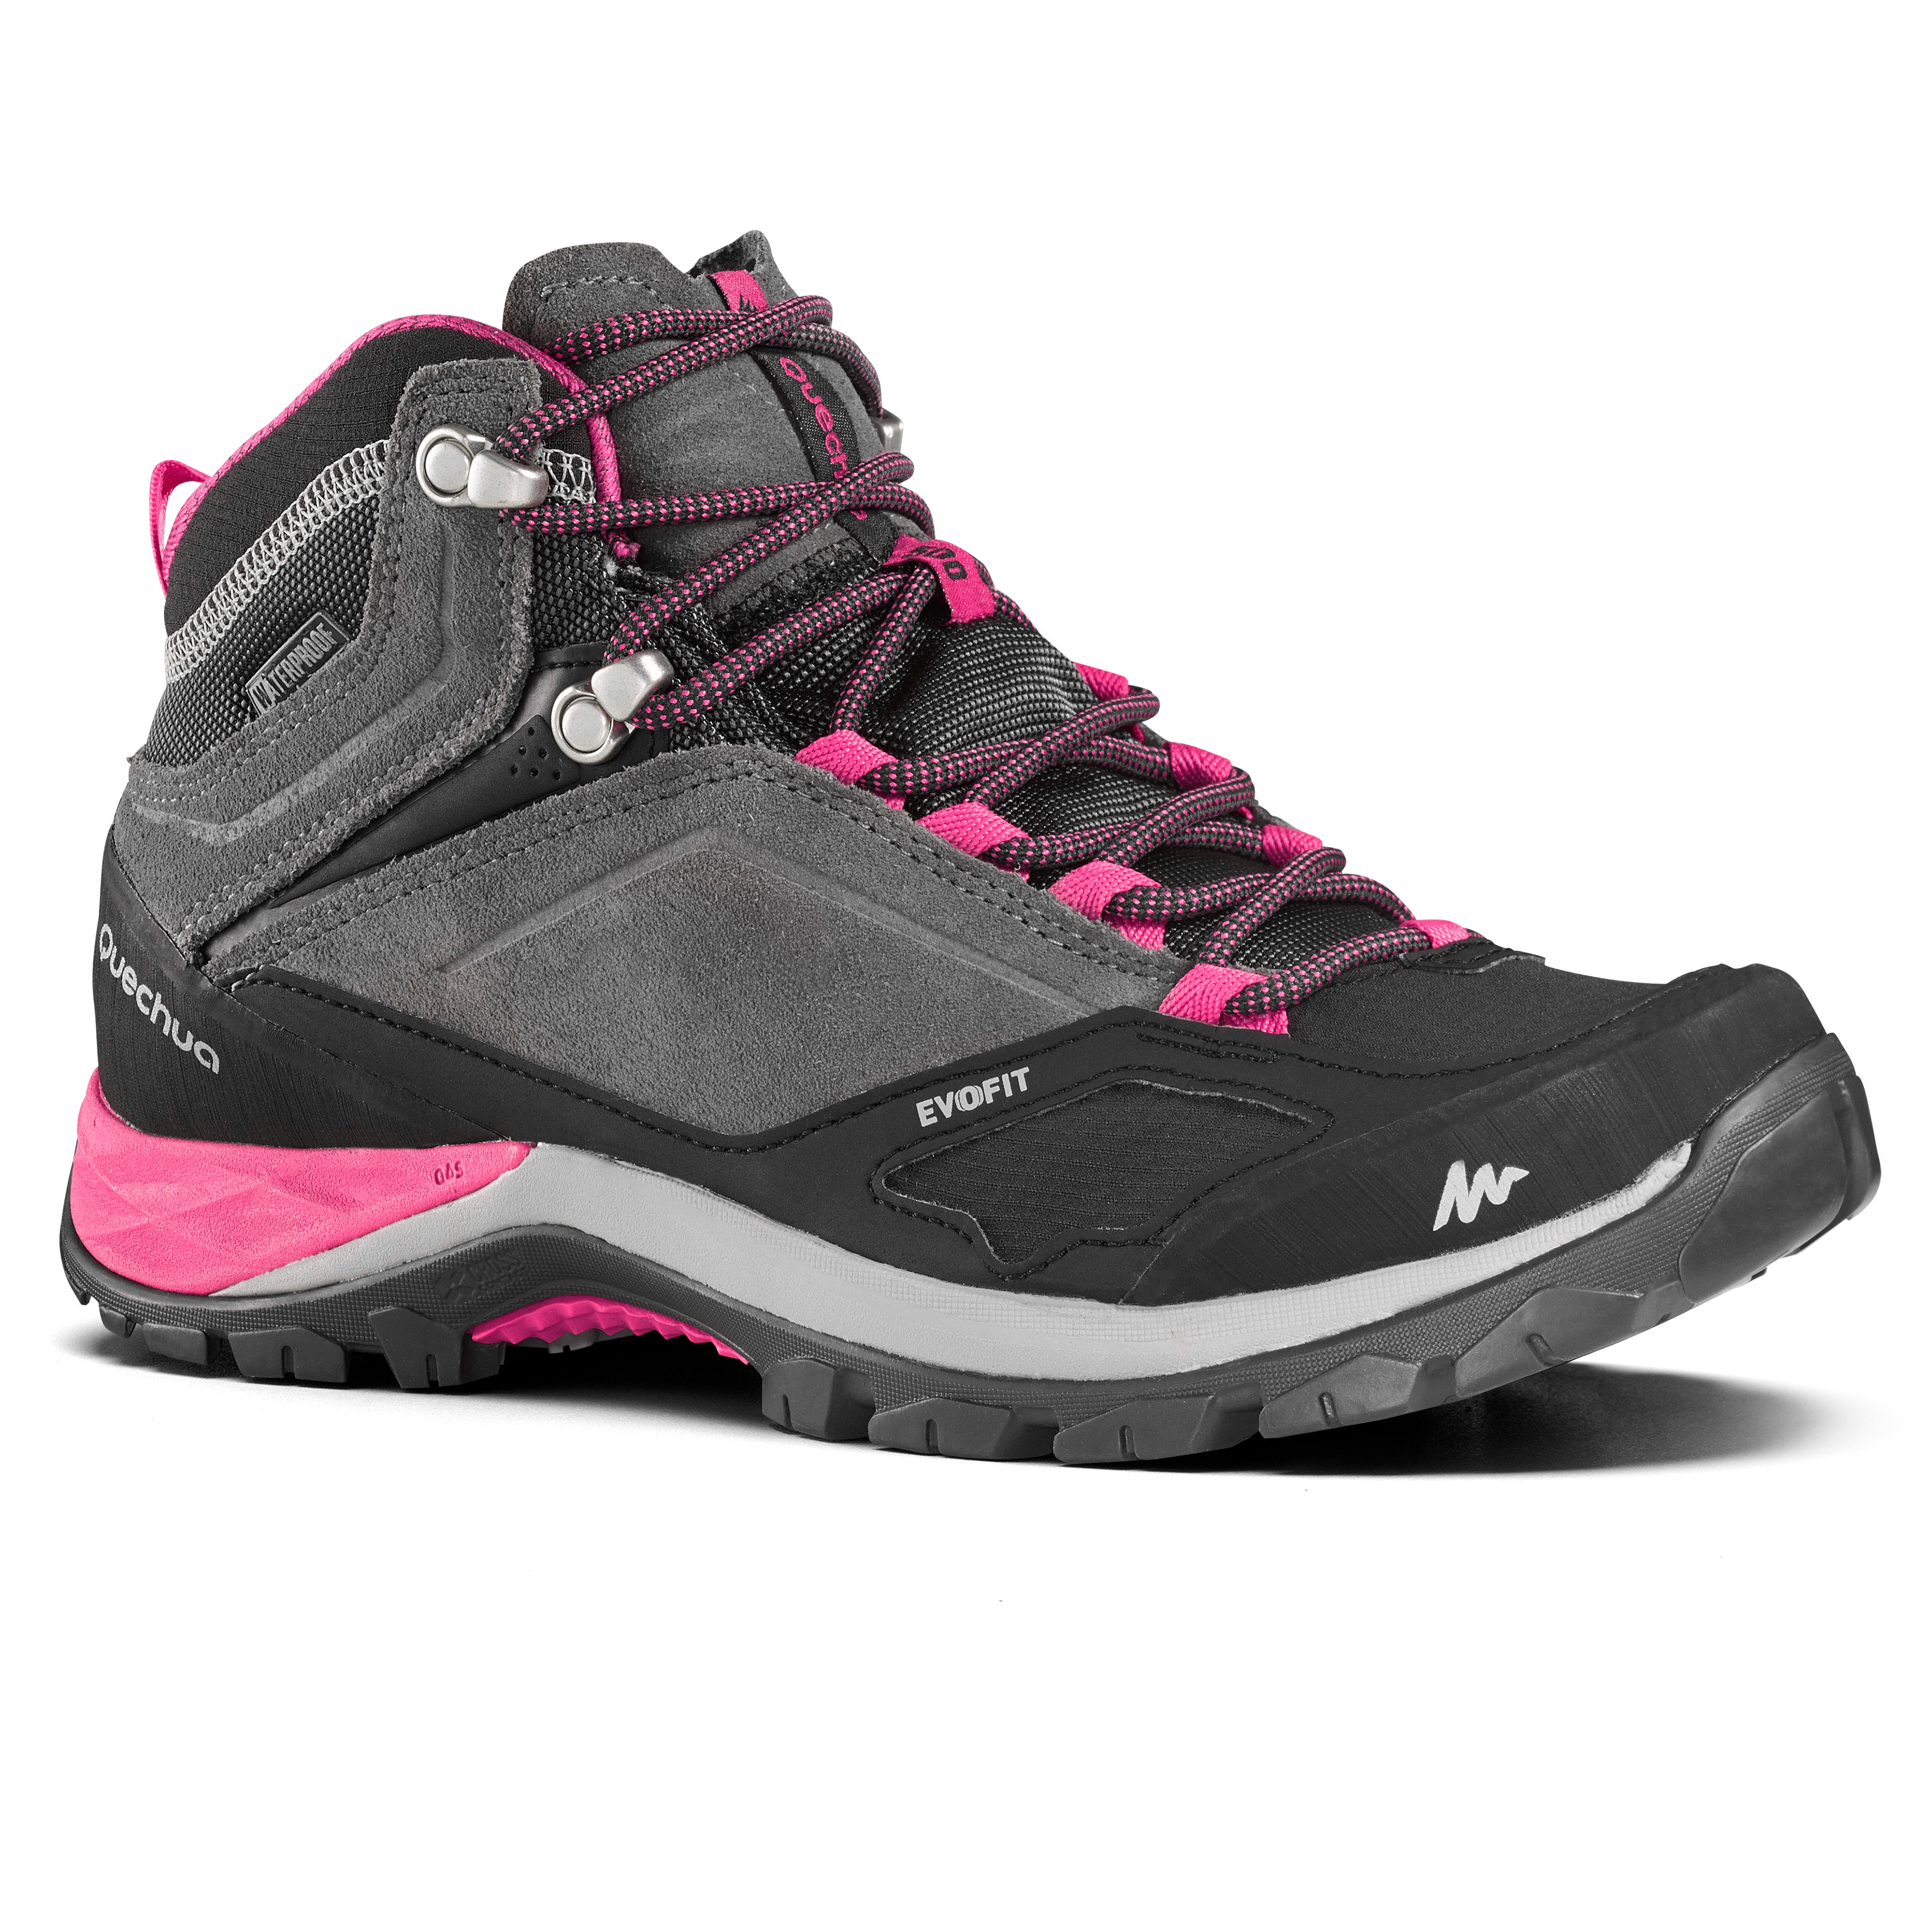 QUECHUA Chaussures imperméables de randonnée montagne - MH500 Mid Gris/Rose- Femme - QUECHUA - 36